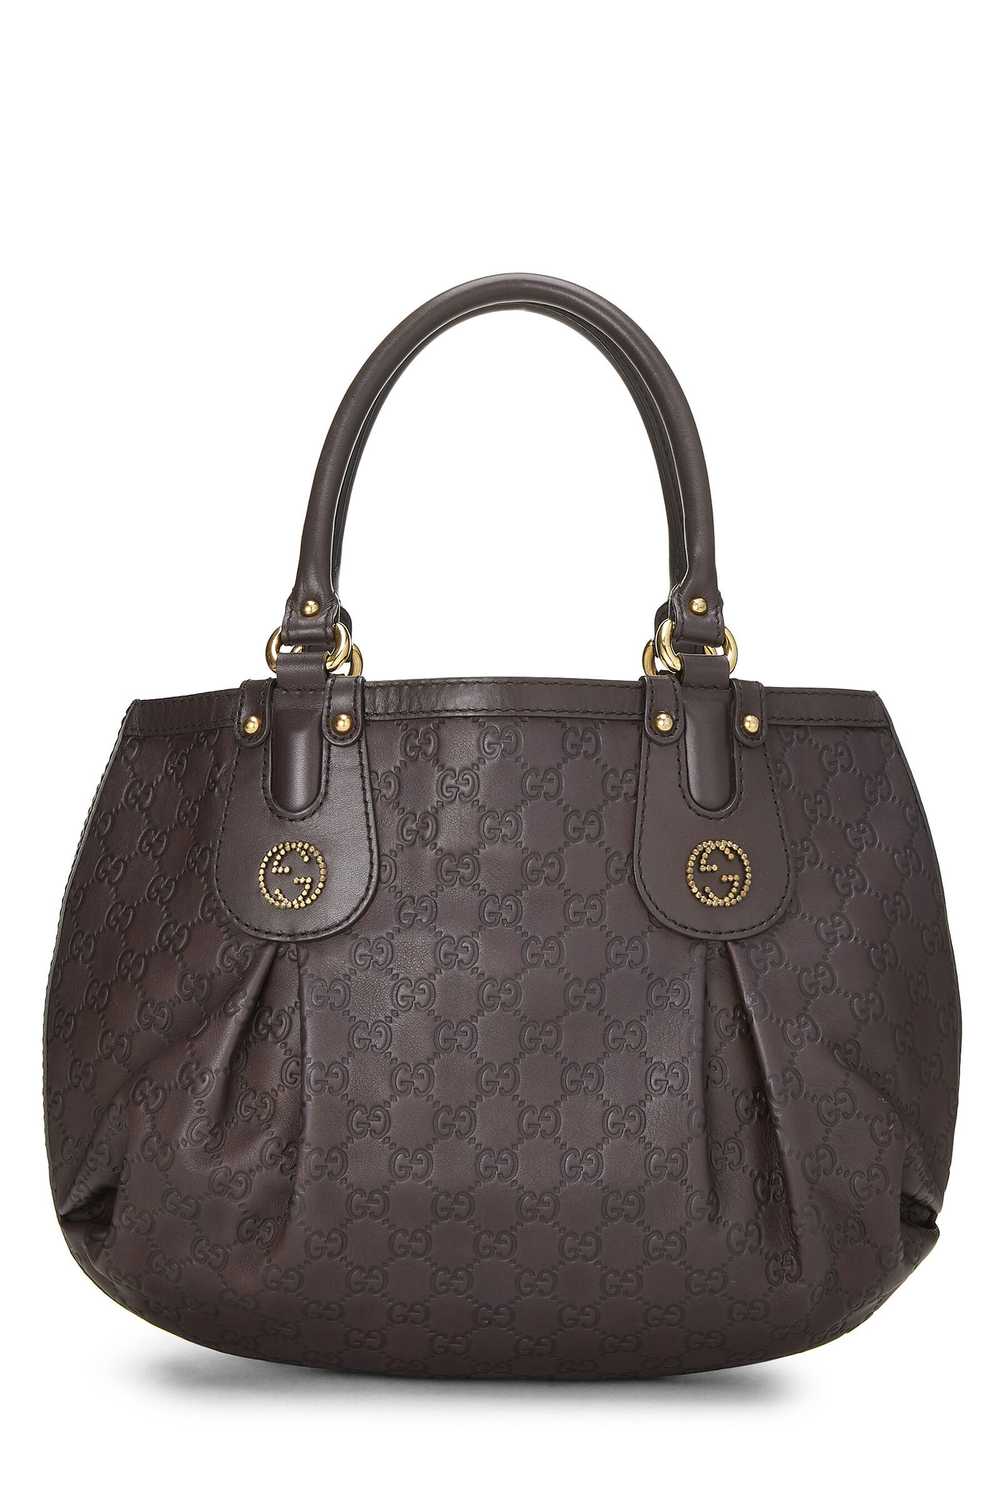 Brown Guccissima Beaded Studded Handbag - image 1